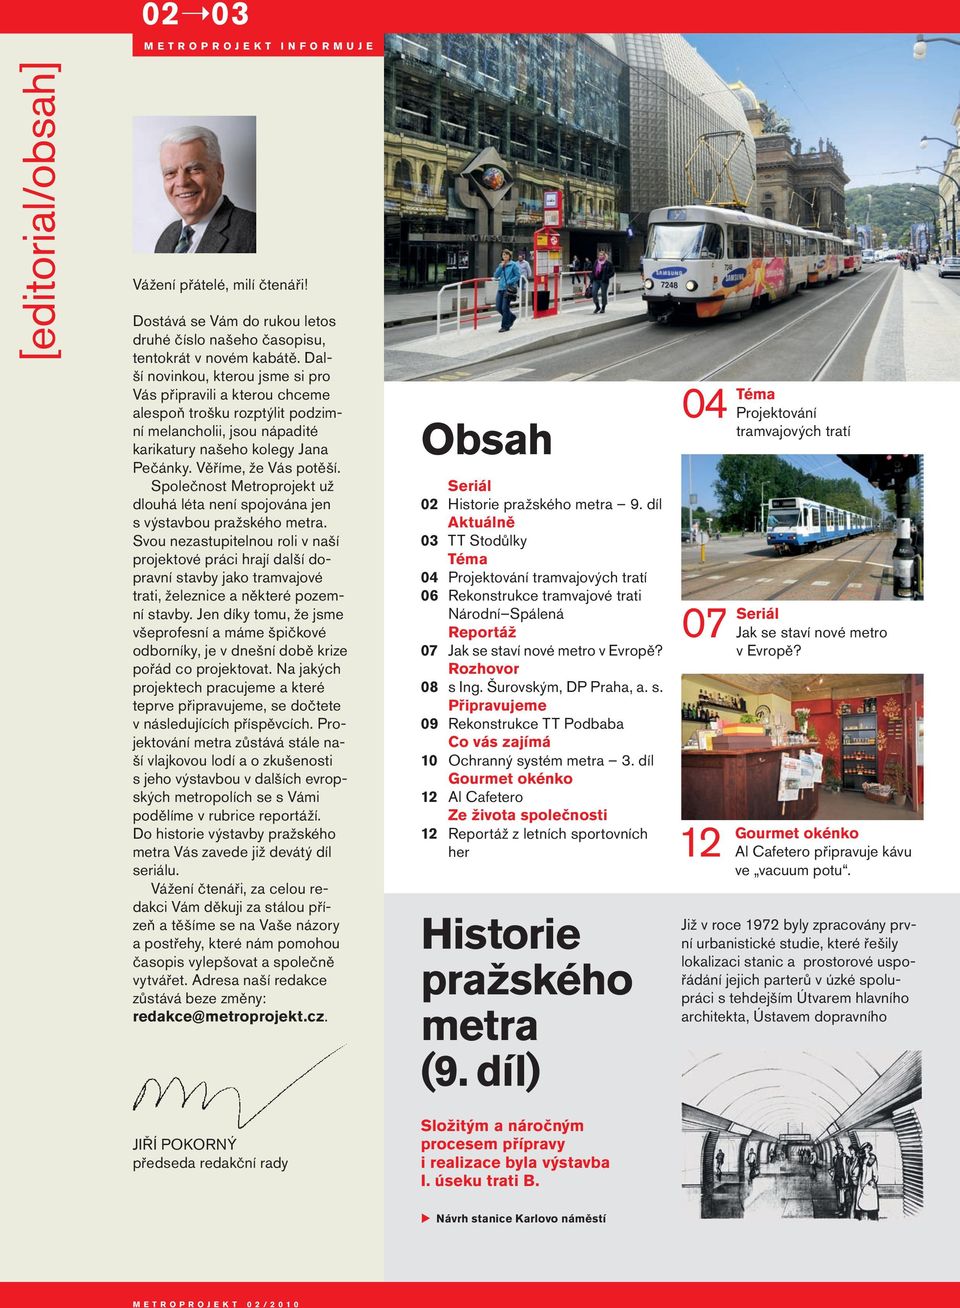 Společnost Metroprojekt už dlouhá léta není spojována jen s výstavbou pražského metra.